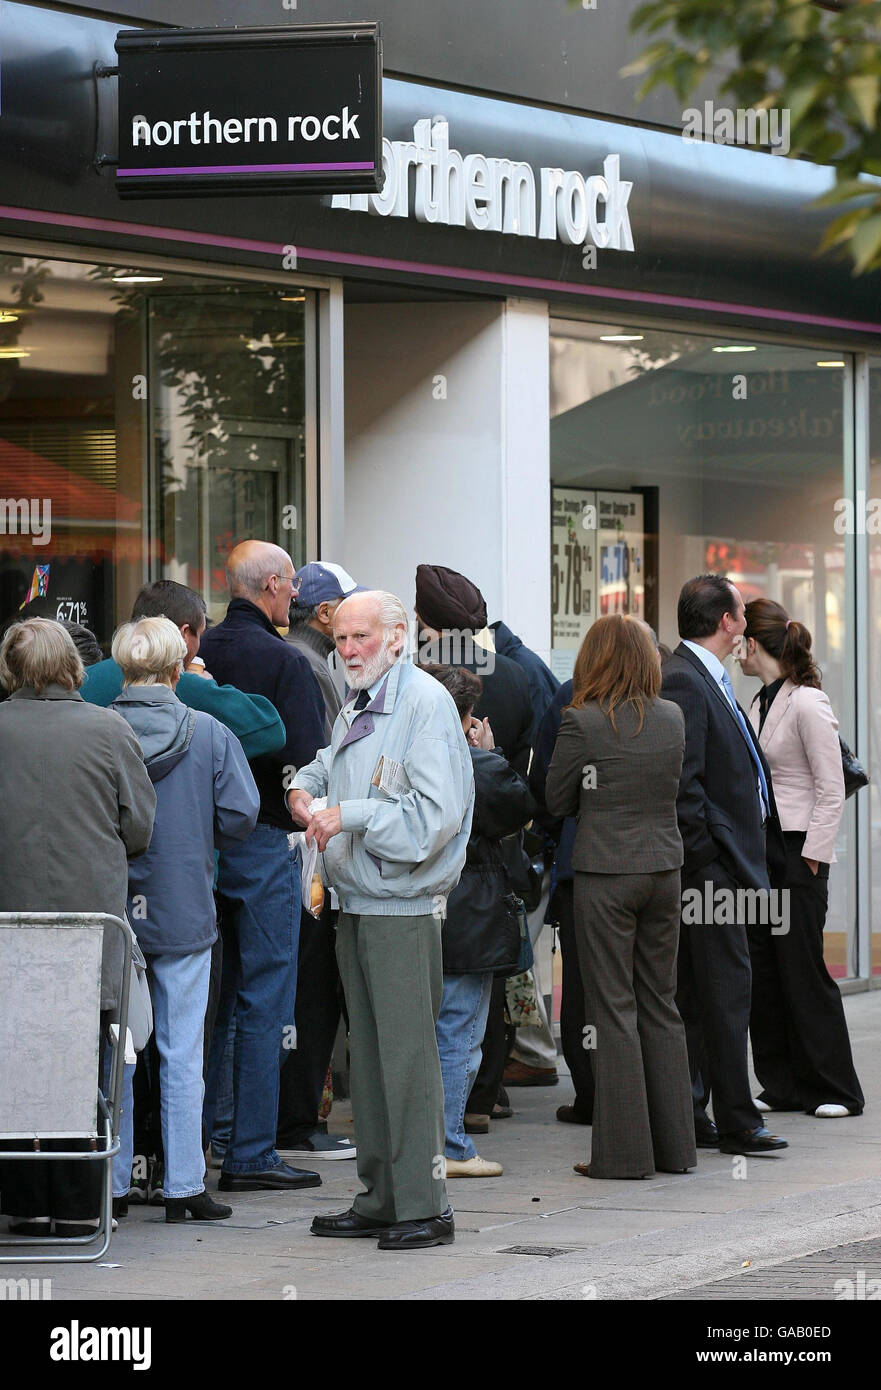 Warteschlangen sind von der Northern Rock Garantie nicht überzeugt. Kunden stehen Schlange, um Geld von der Northern Rock Bank in Kingston-upon-Thames, Surrey, abzuheben. Stockfoto